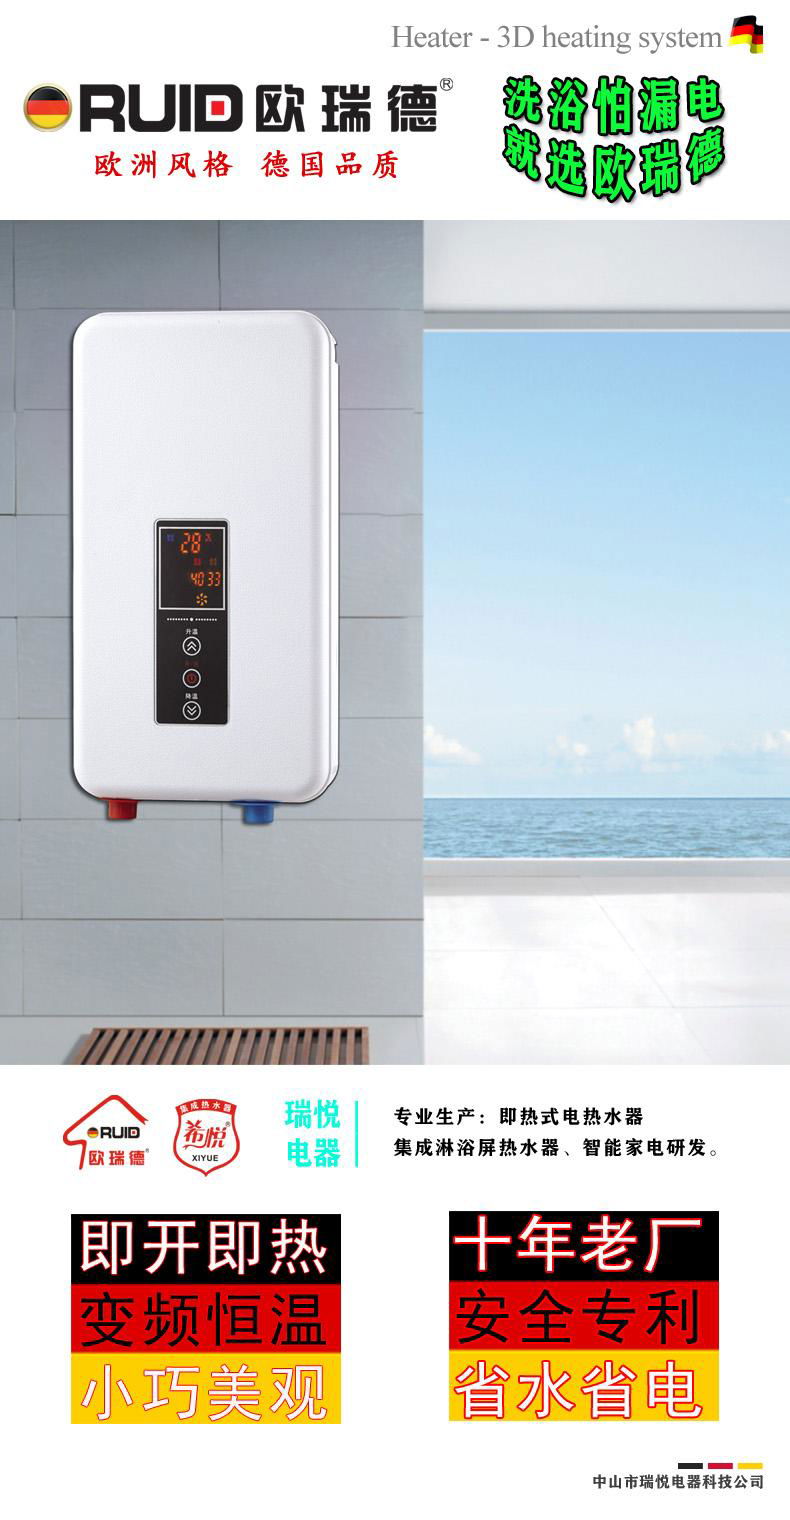 欧瑞德即热热水器 即热式电热水器 安全专利 即热式热水器02